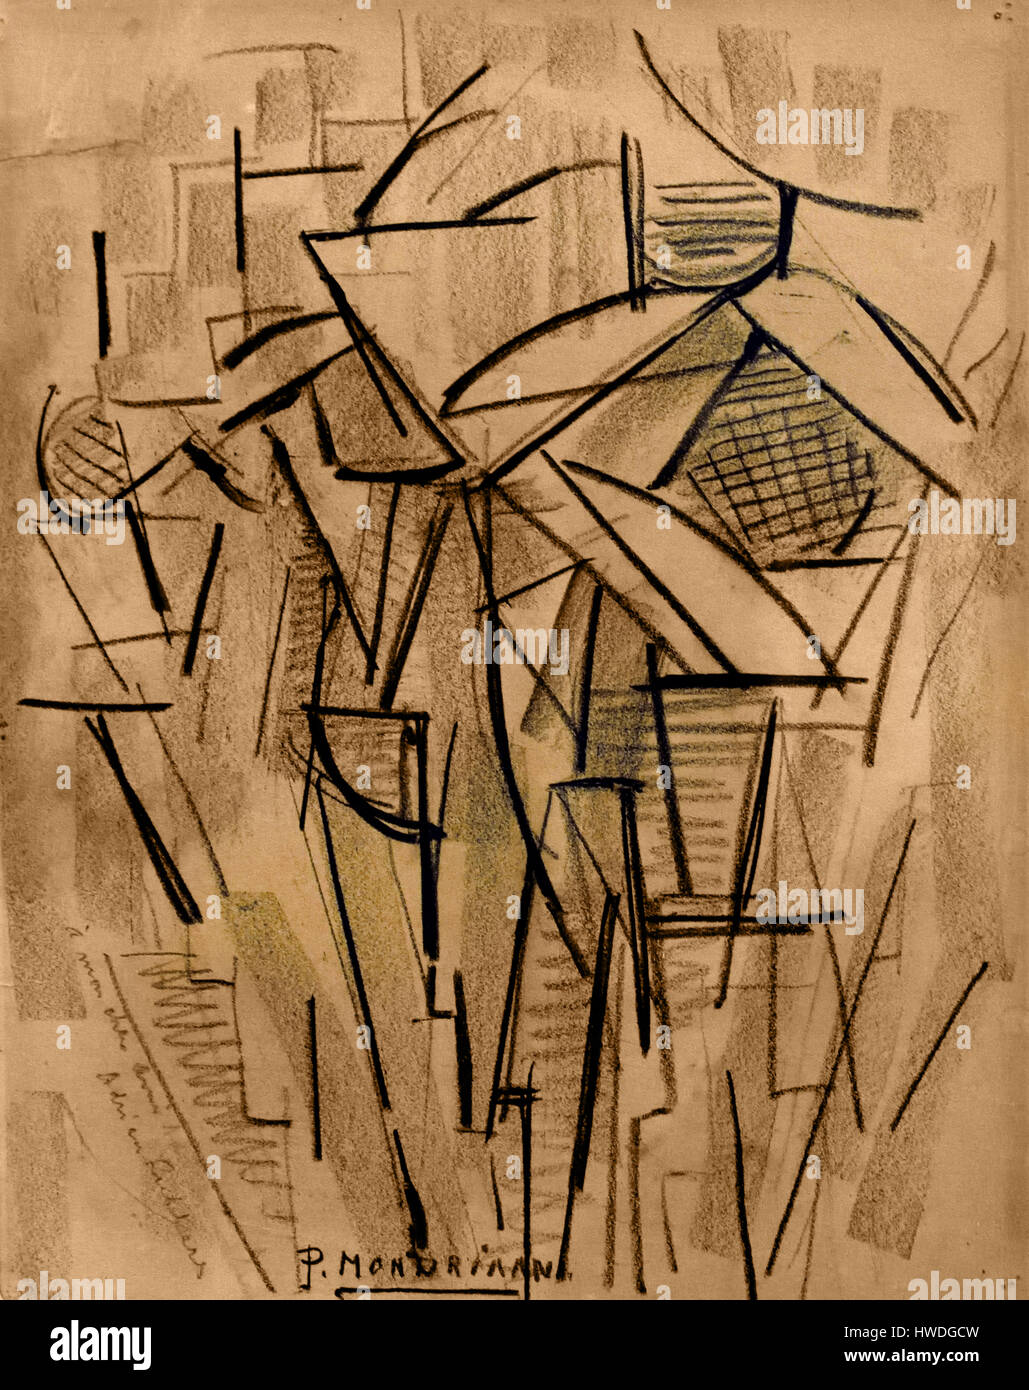 Étude de composition n° XIII / composition n° 2 1912 peinture Piet Mondrian - Mondriaan (1872 - 1944) pays-Bas Banque D'Images